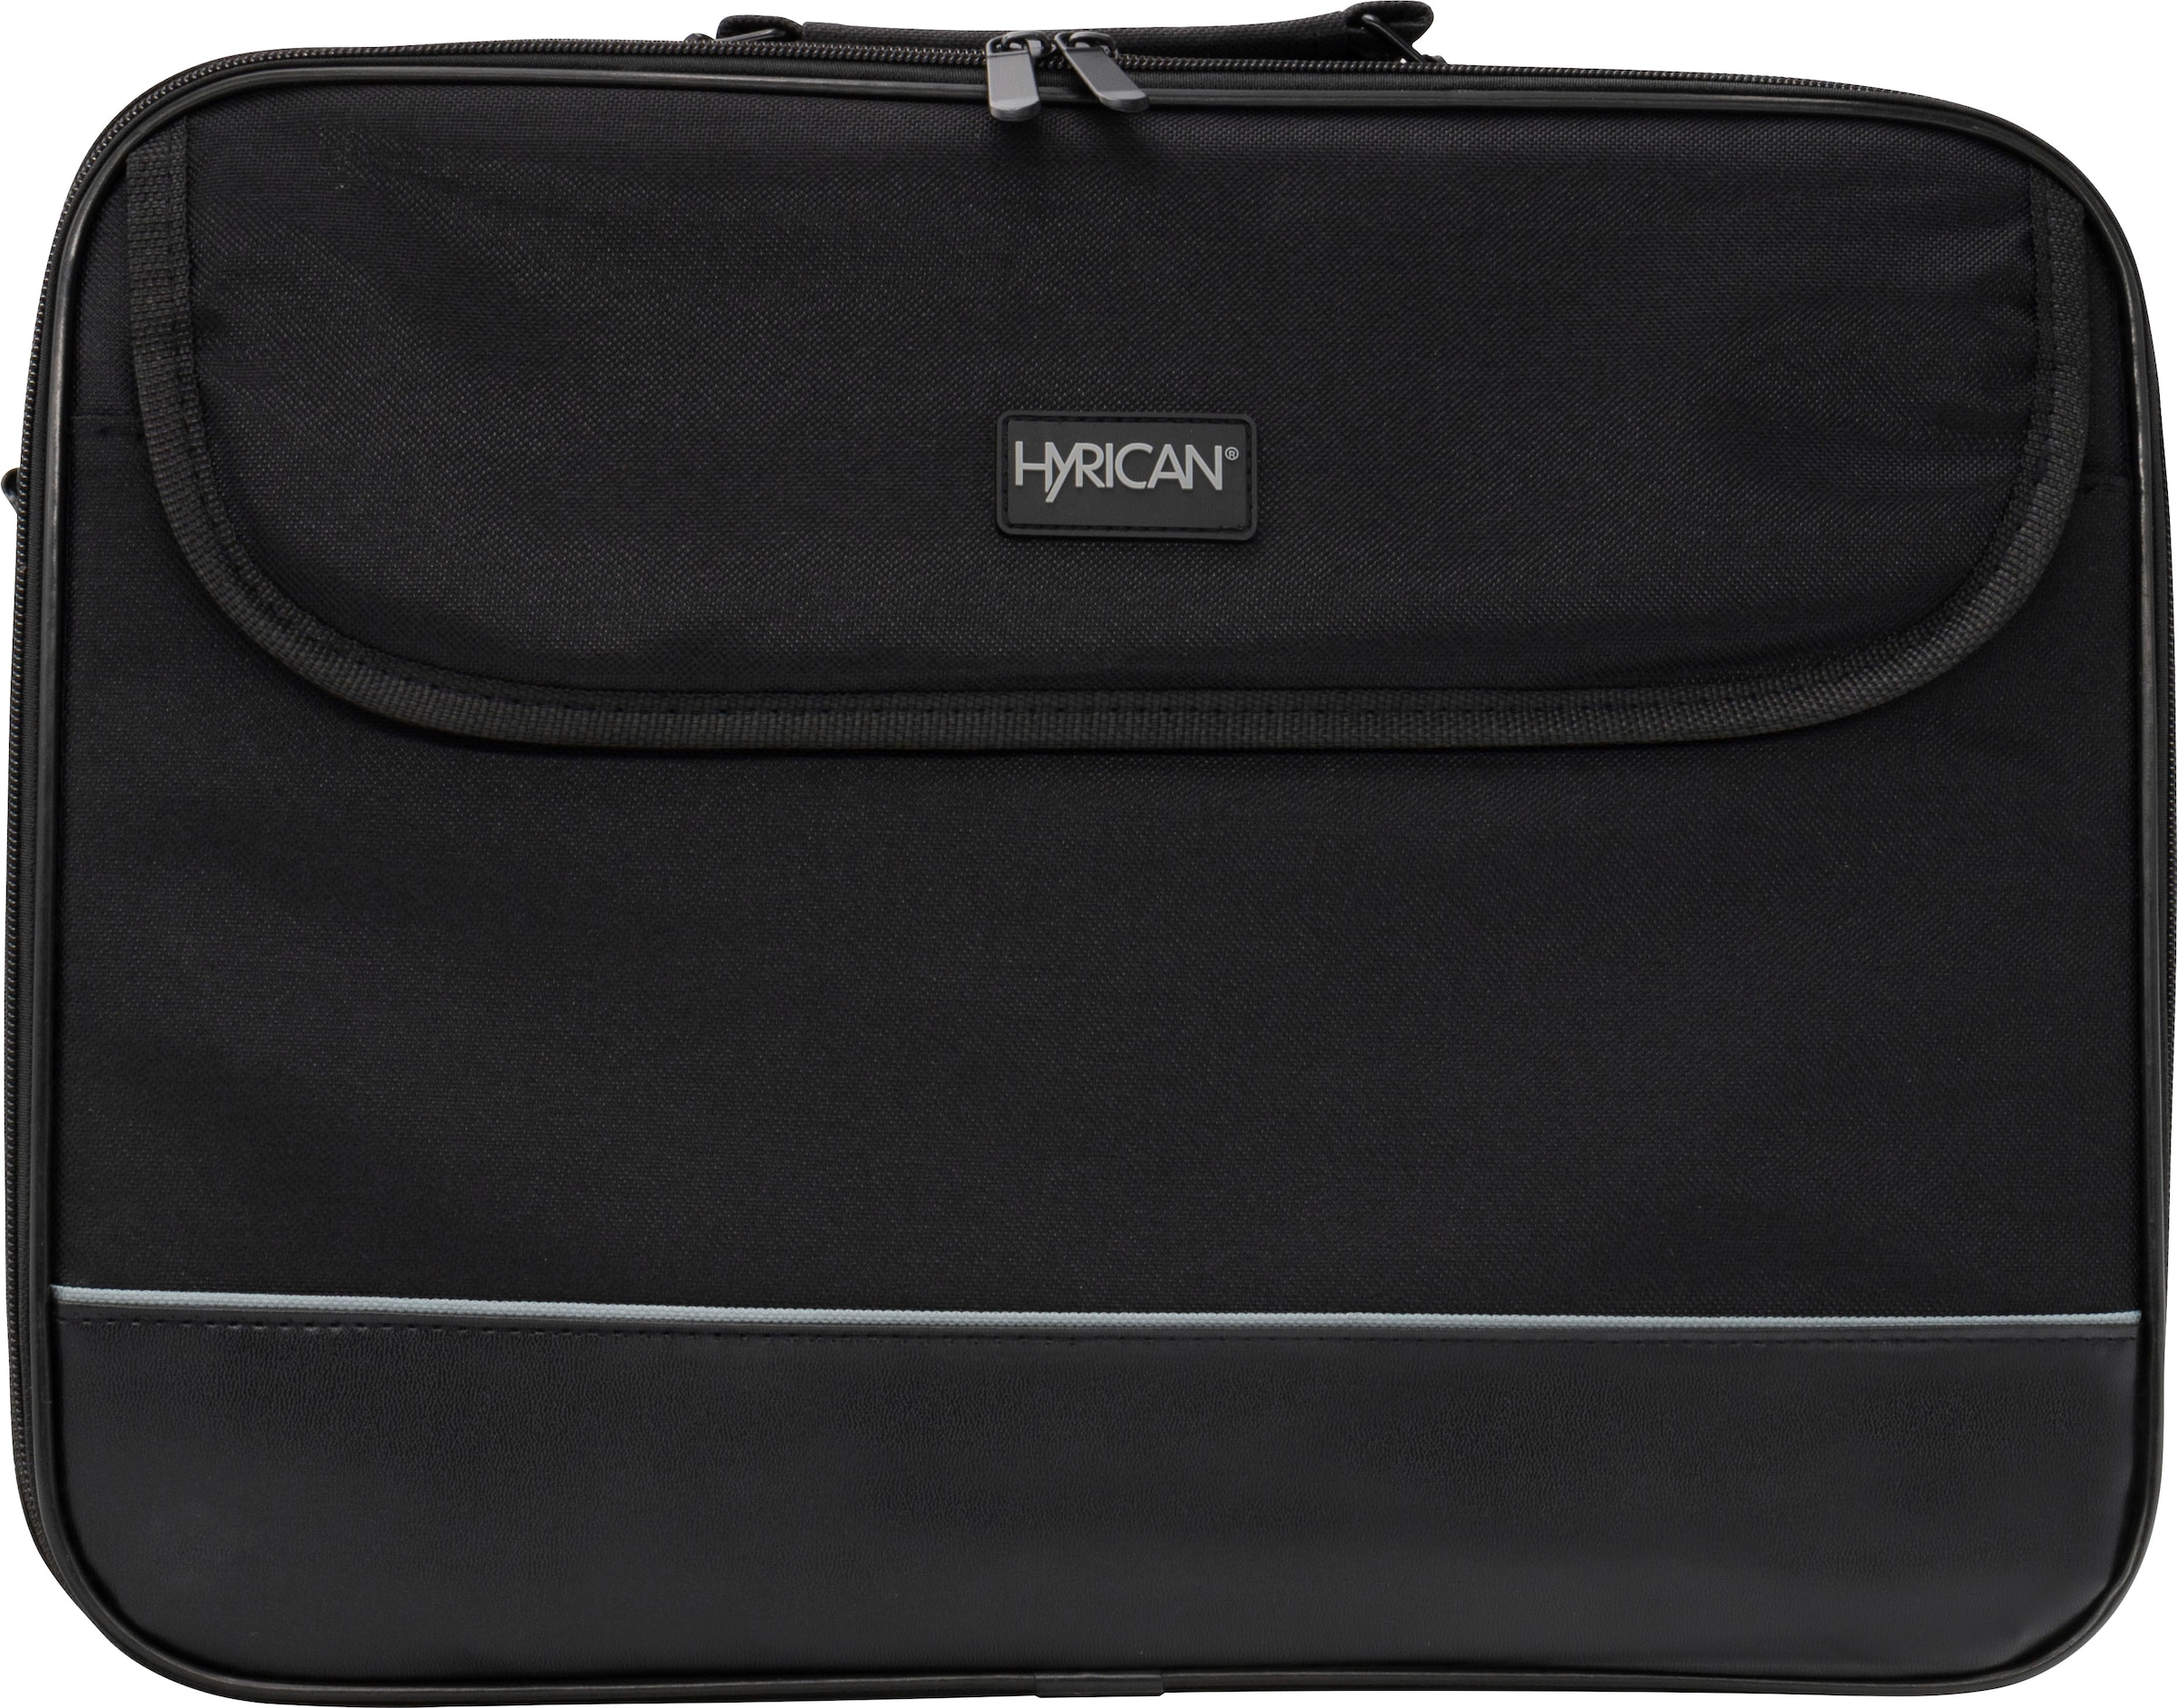 Hyrican Laptoptasche »Laptop Tasche für Notebooks bis 15,6 Zoll«, Business Computertasche, Umhängetasche, Schultertasche, Notebooktasche